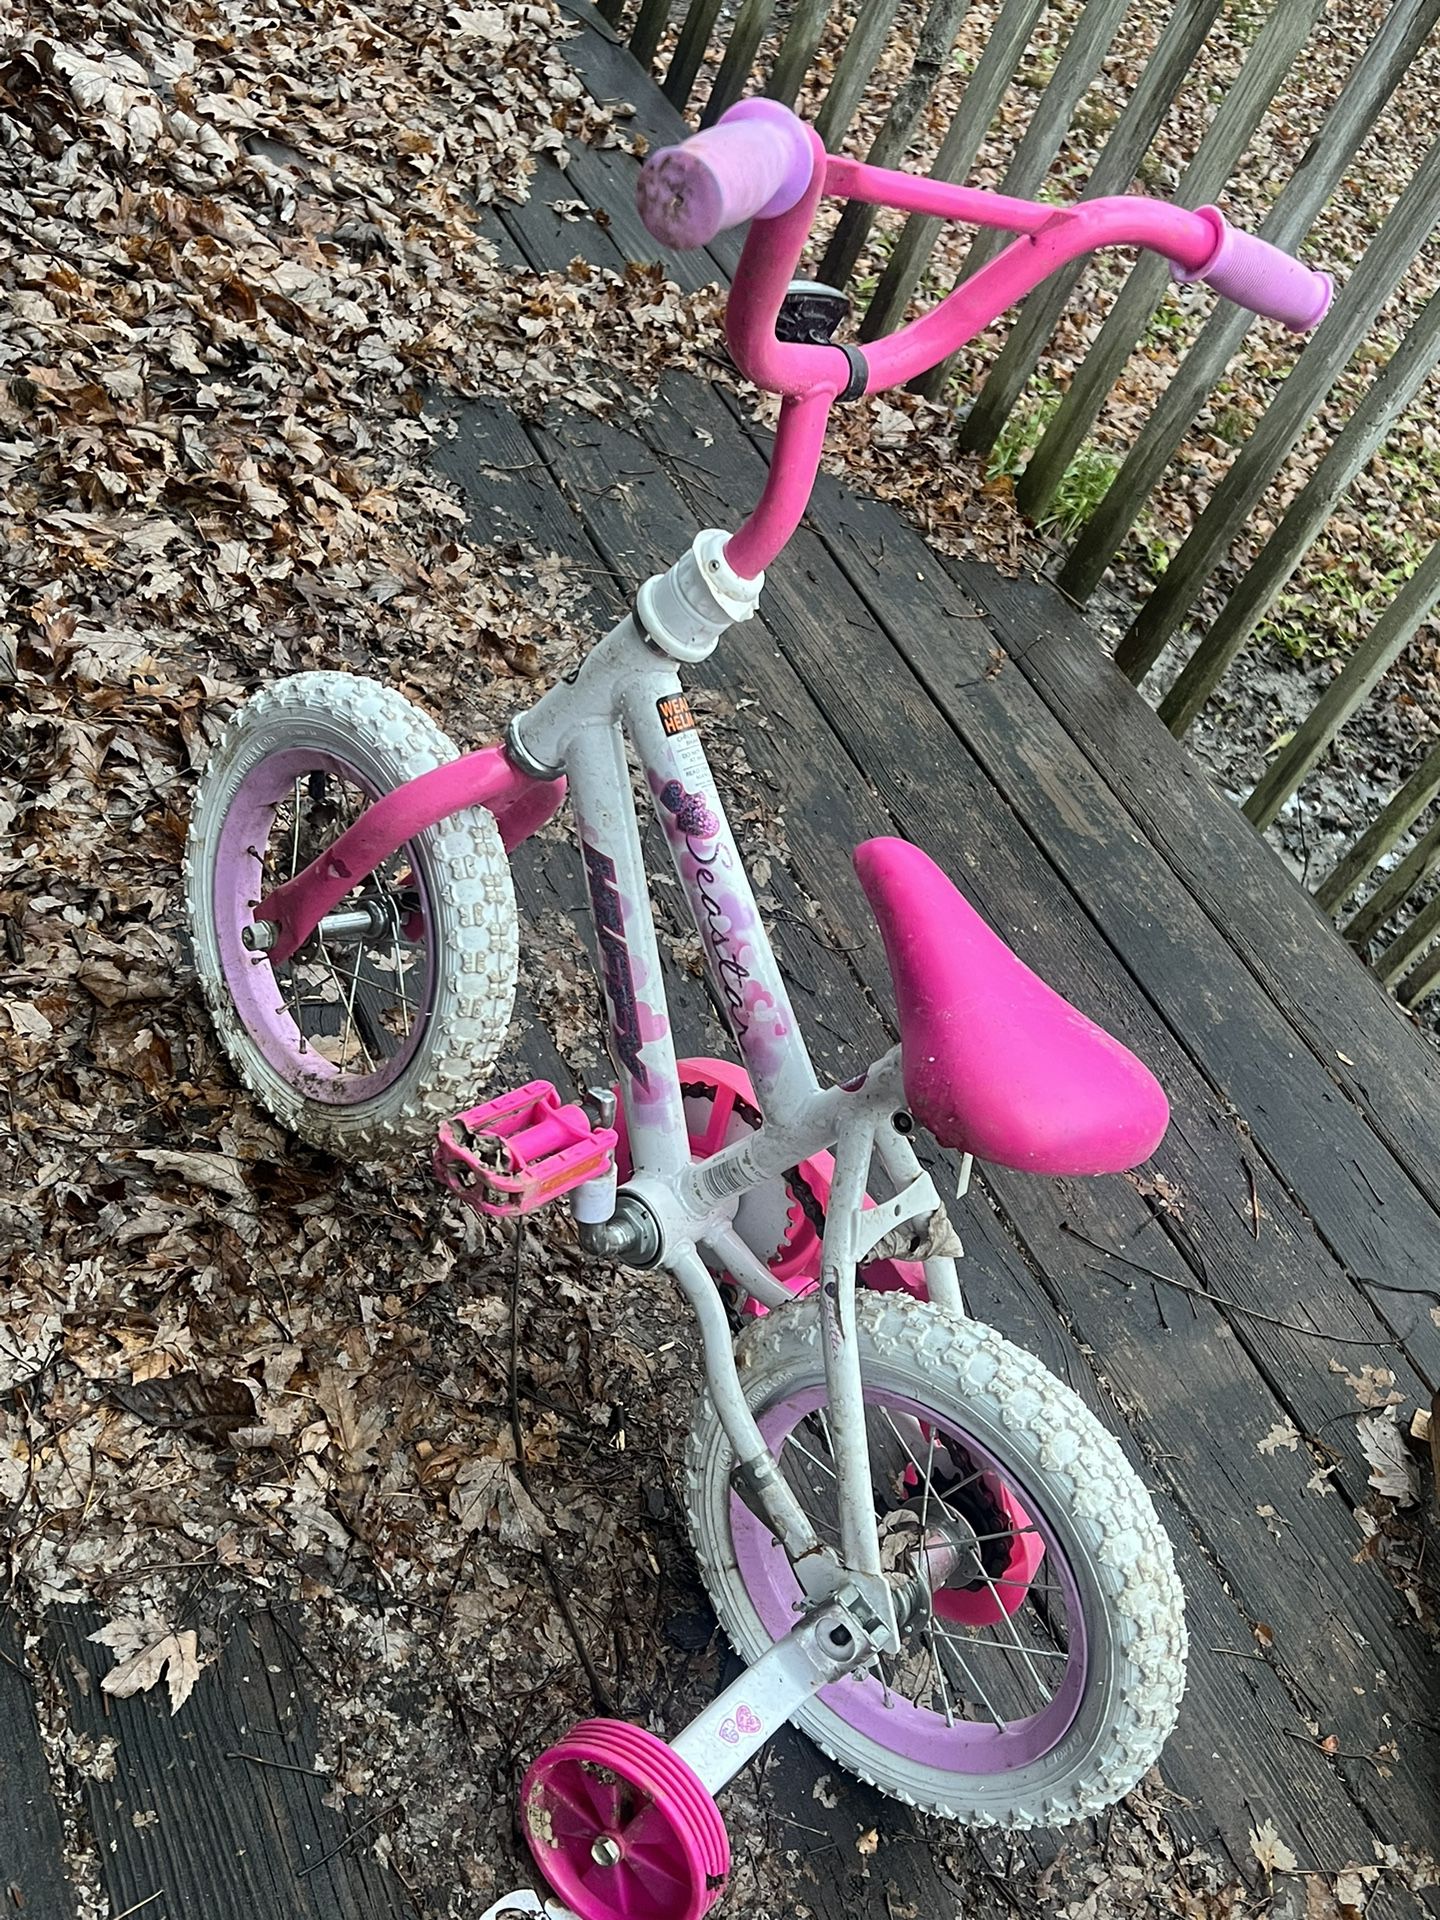 Bike For Kids